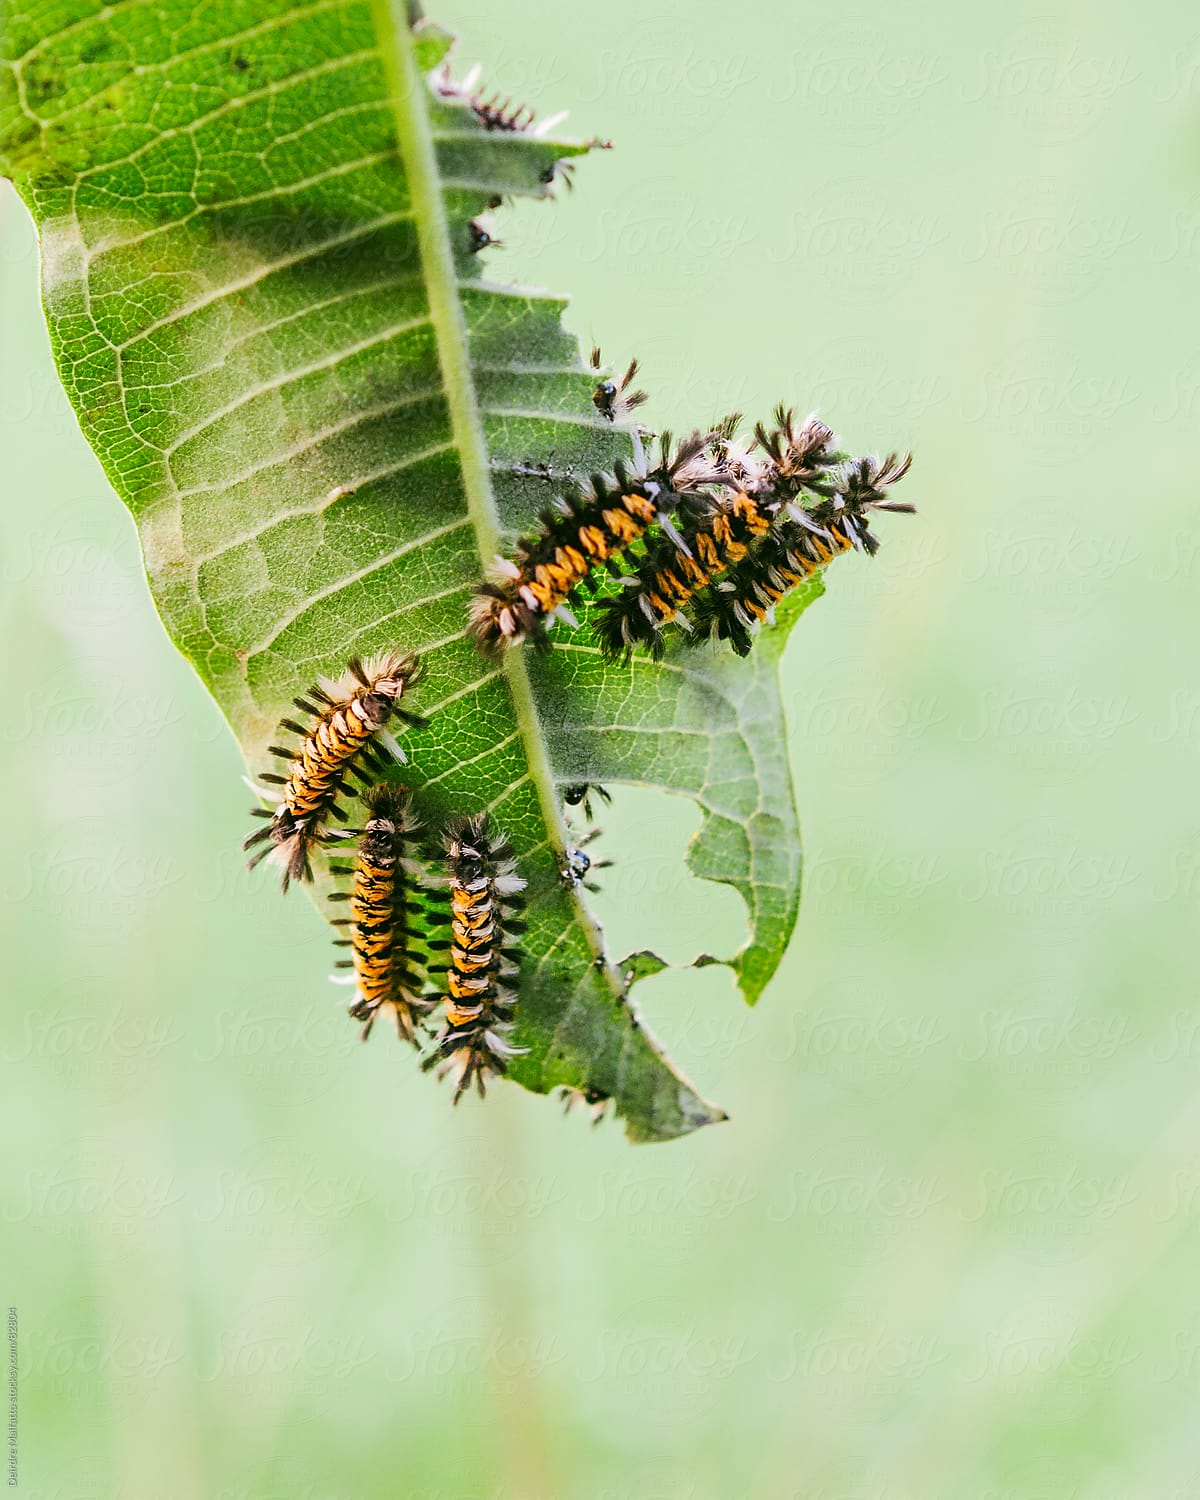 milkweed tussock caterpillars eating a milkweed leaf